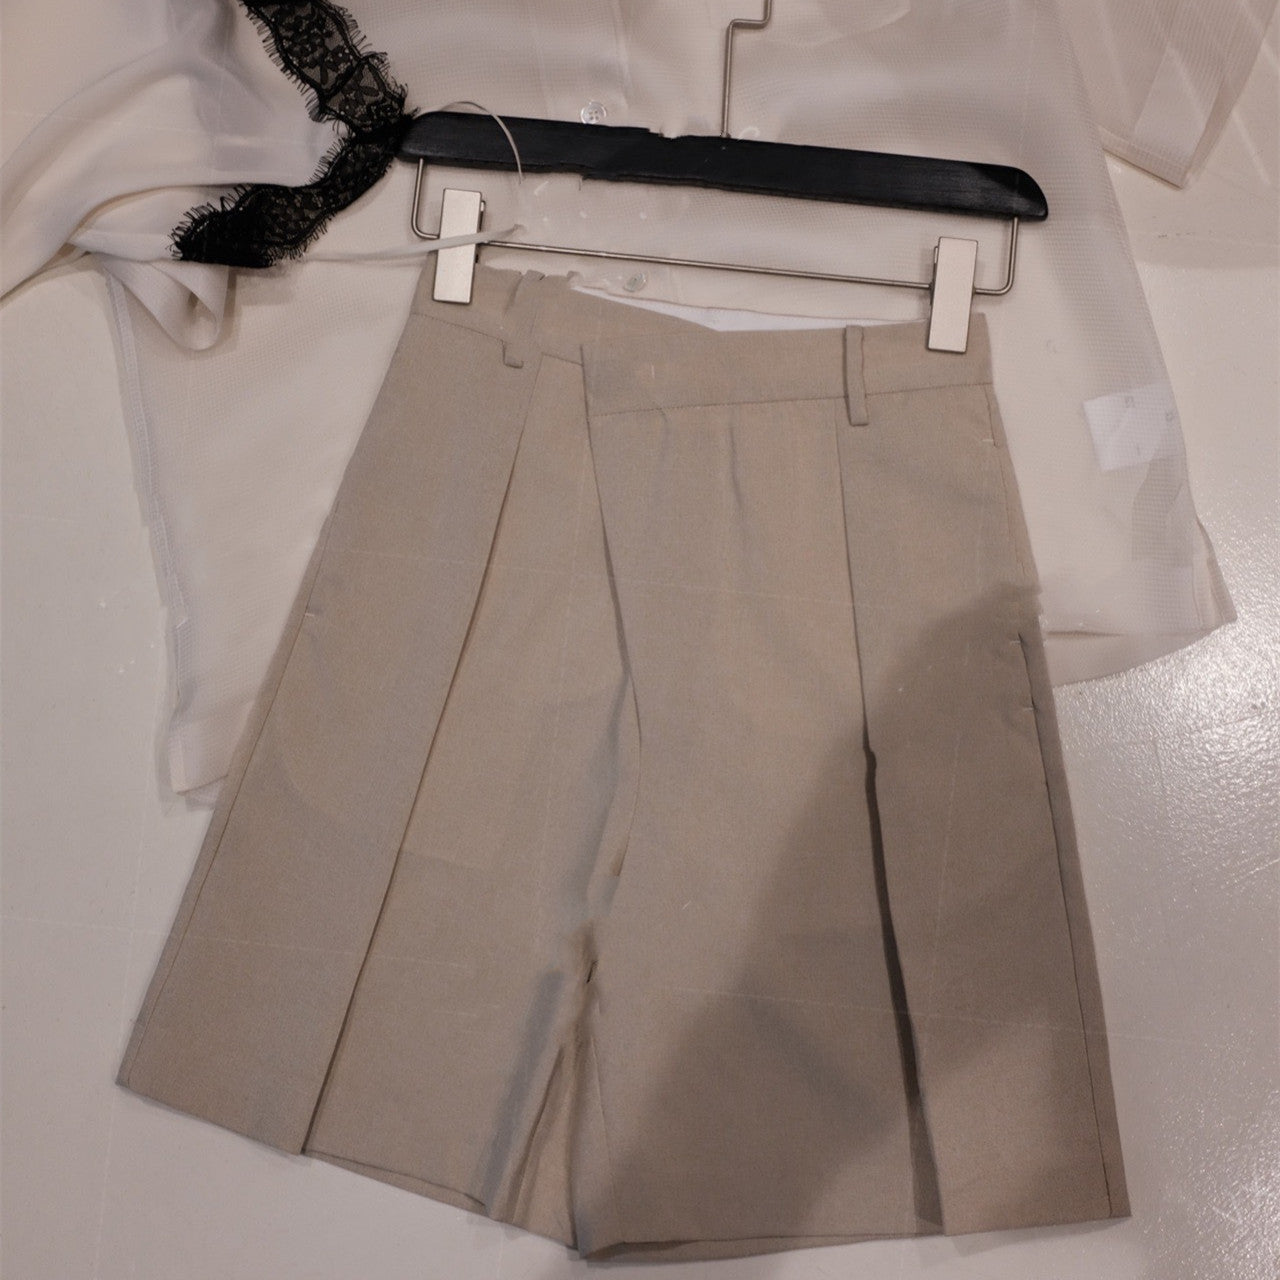 Bermuda Shorts Suit Diagonal Placket Shorts Shorts